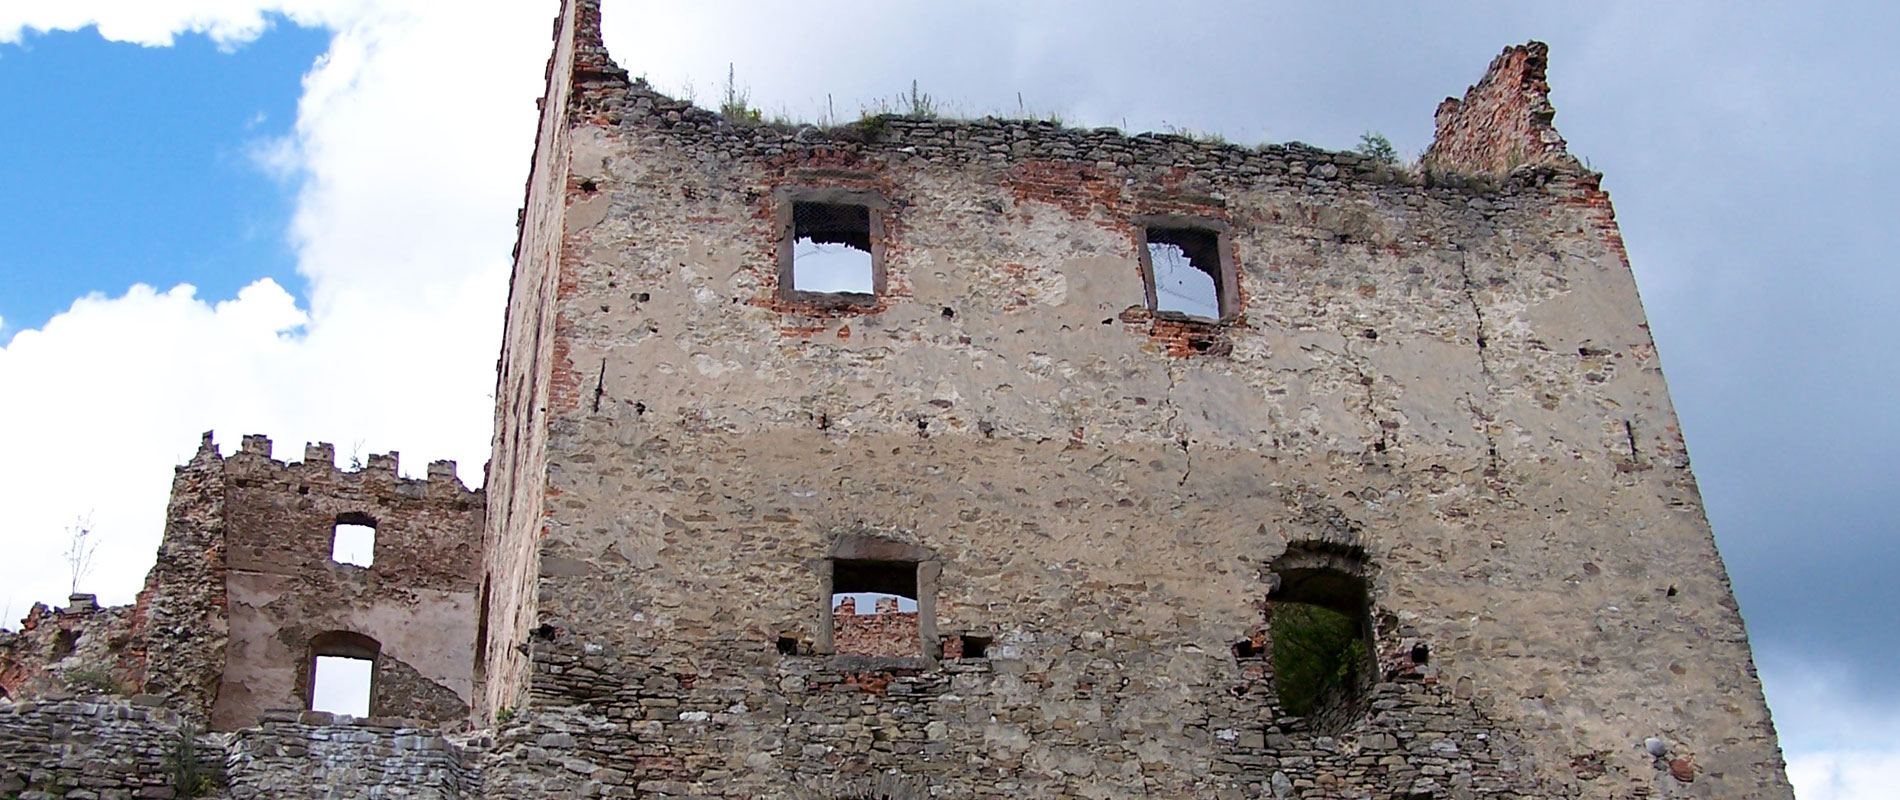 Čiastočne zrekonštruovaný hrad nad mestom Stará Ľubovňa.